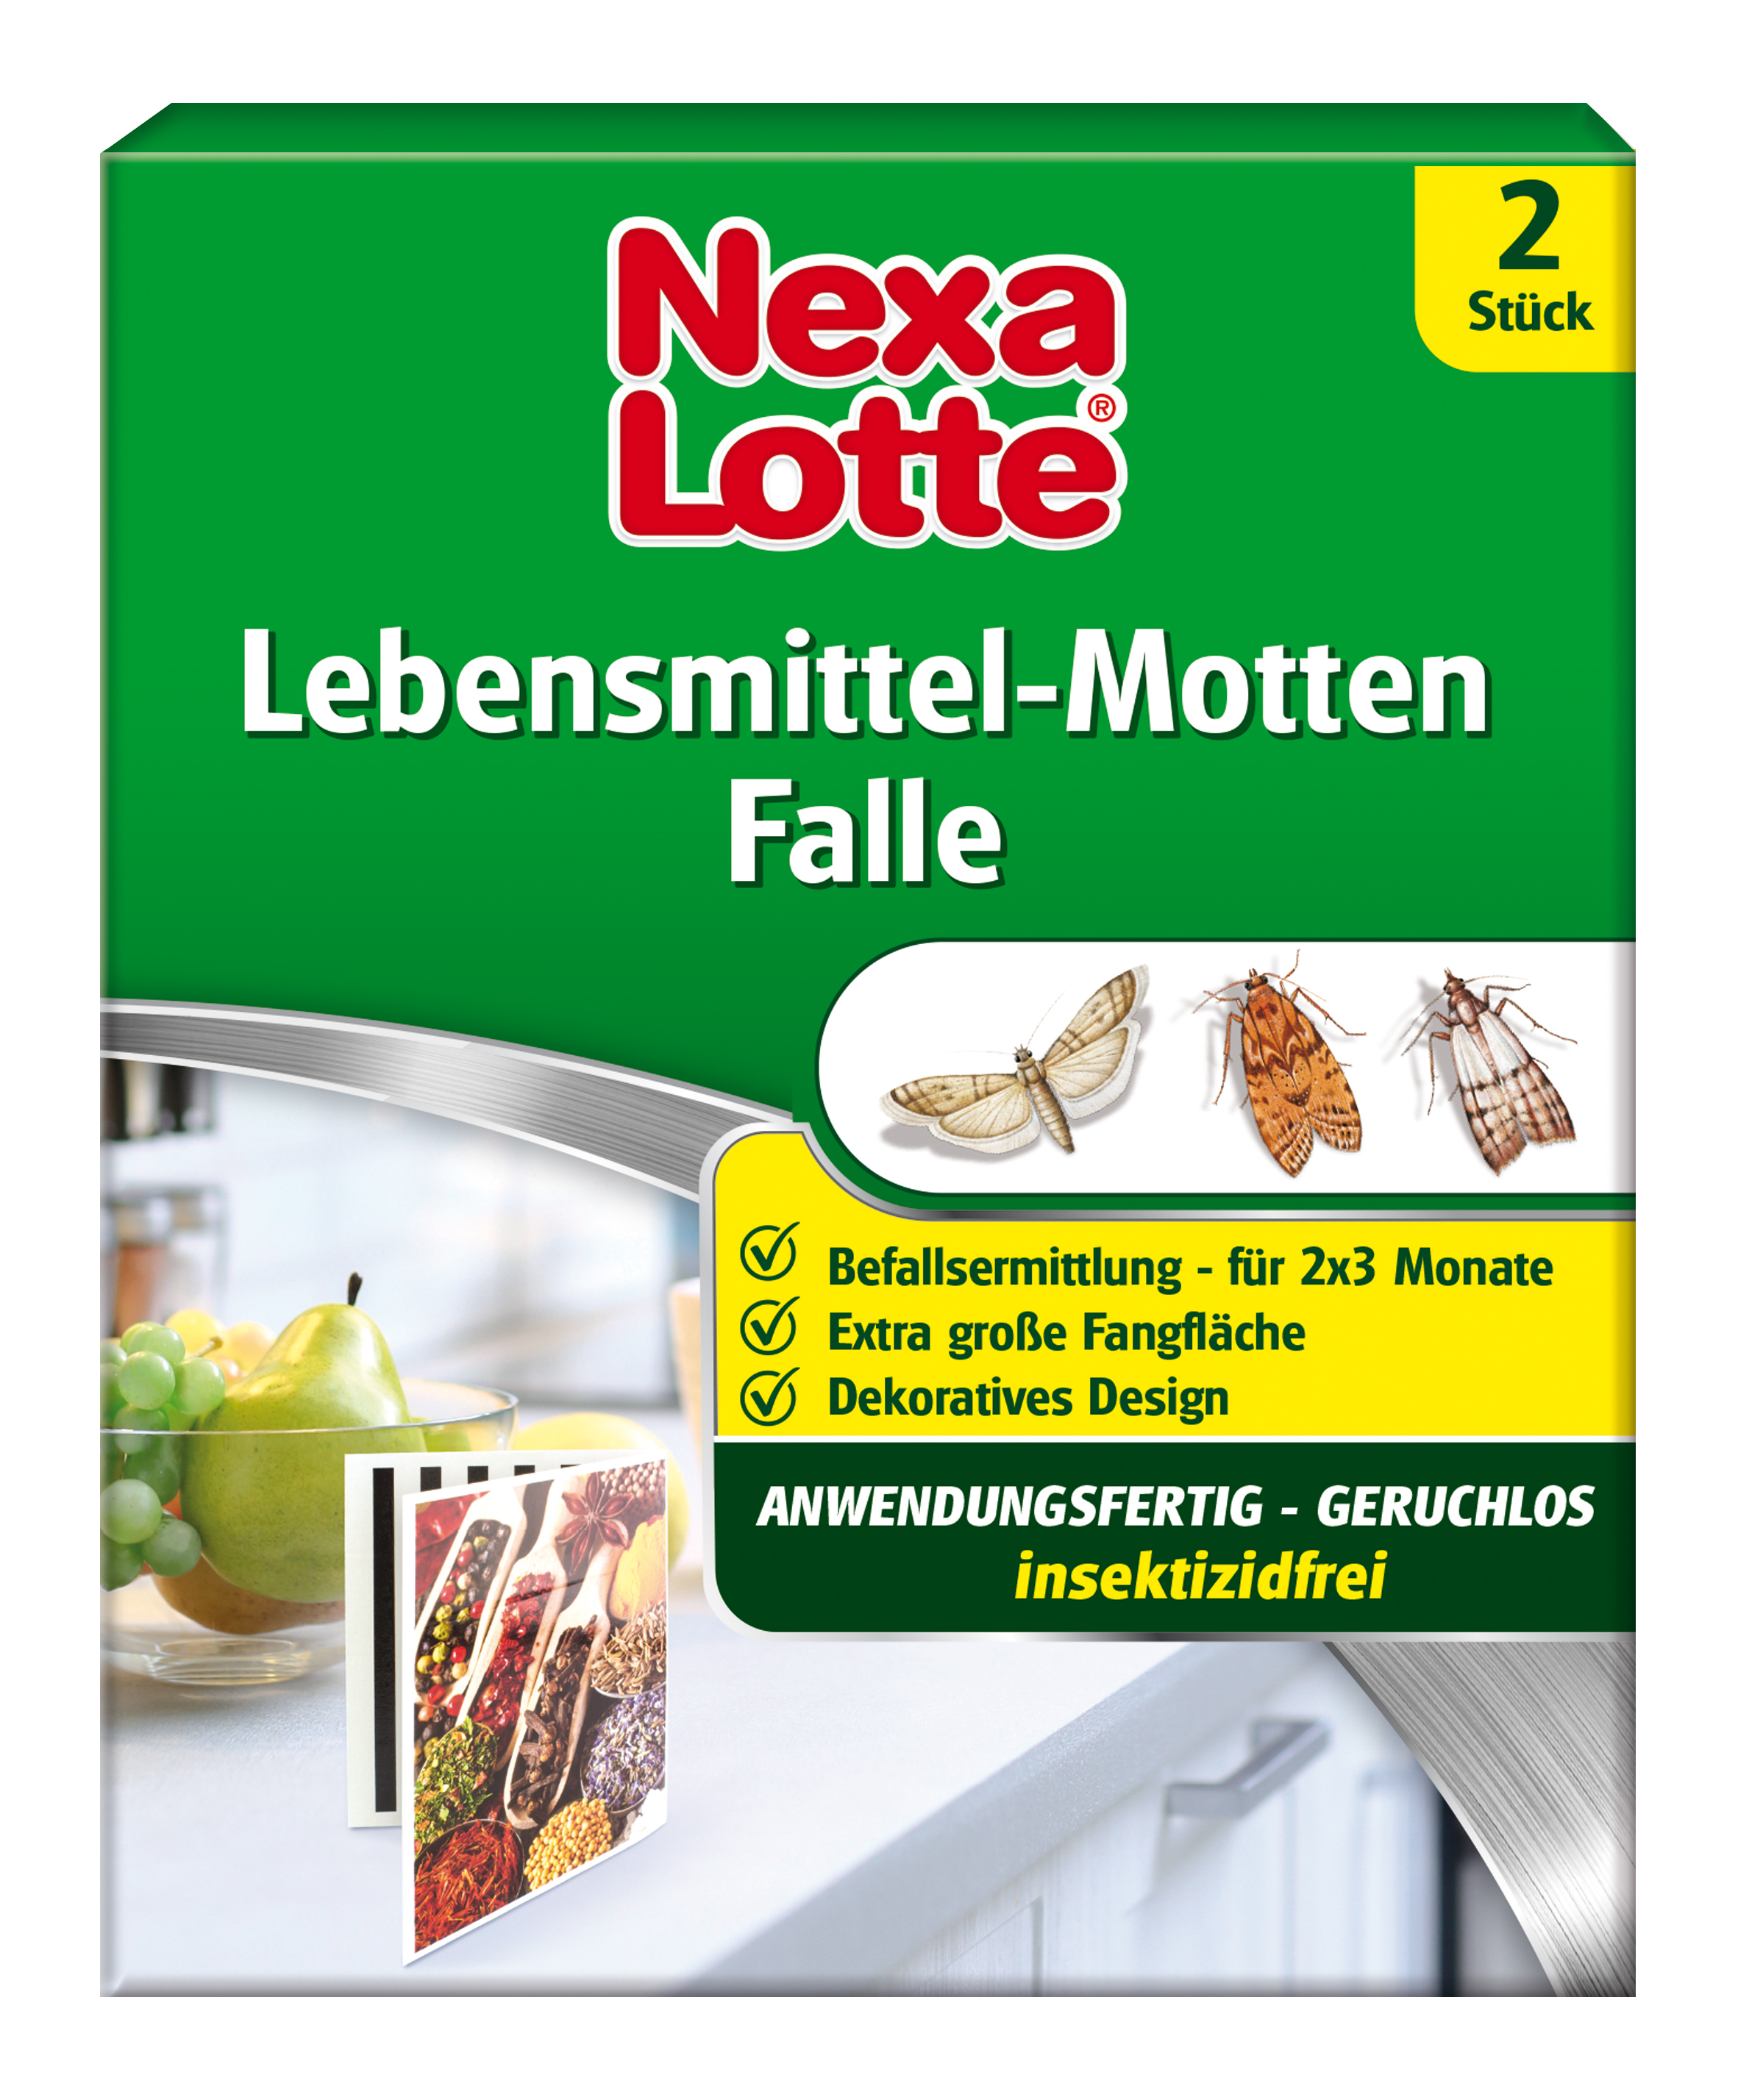 Nexa Lotte Lebensmittelmotten-Falle 2 Stück